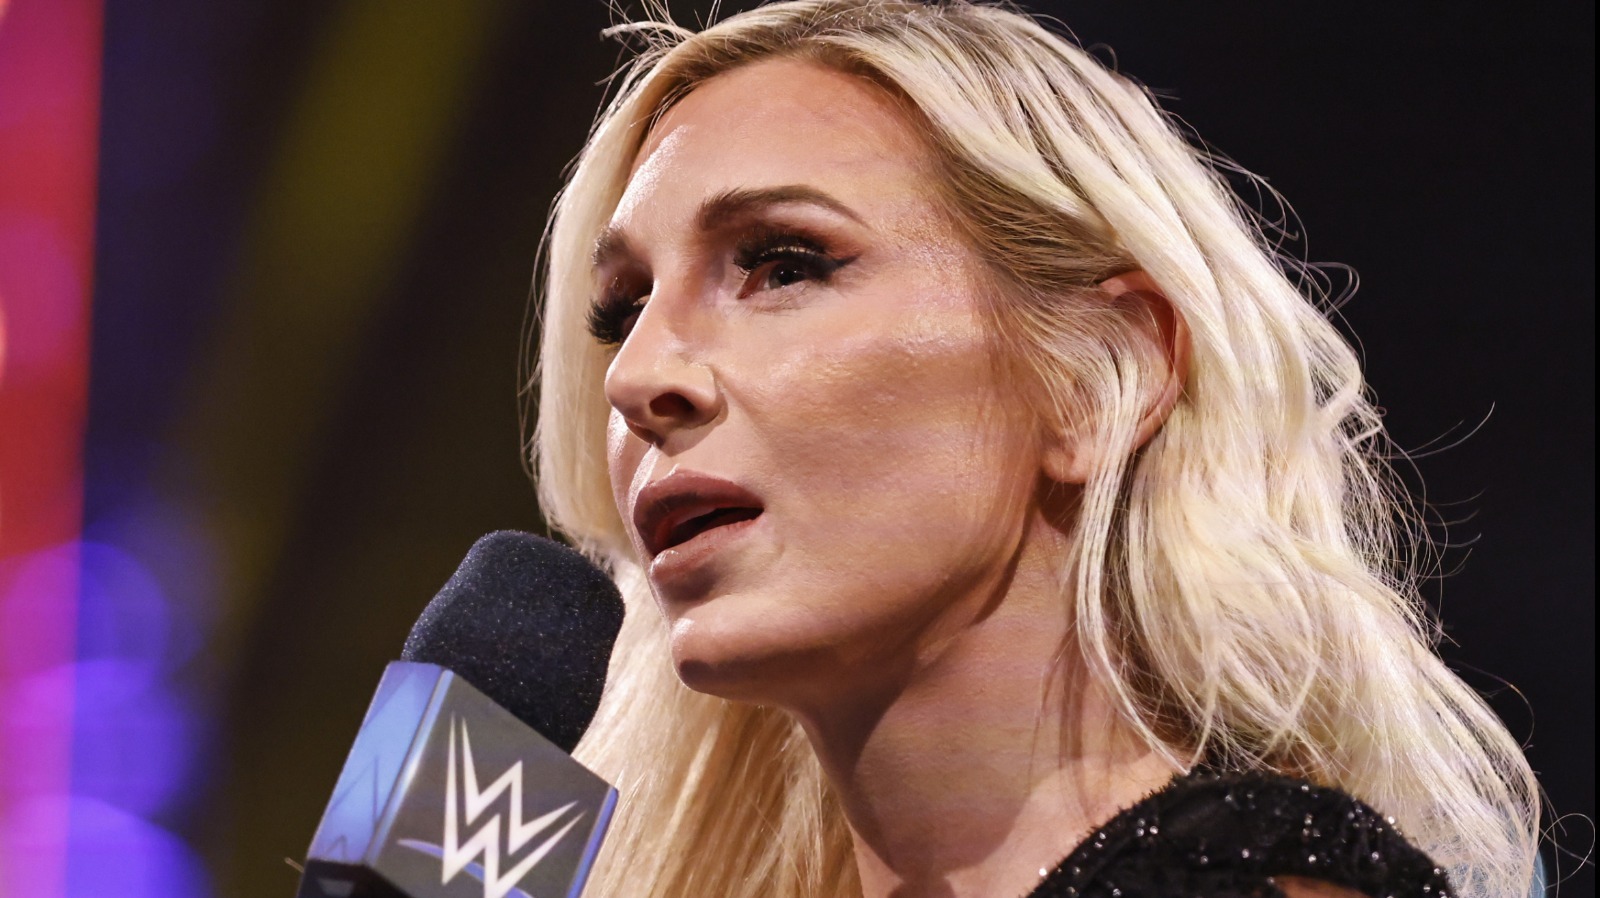 Charlotte habla sobre su ausencia en la WWE relacionada con lesiones y necesita un descanso mental